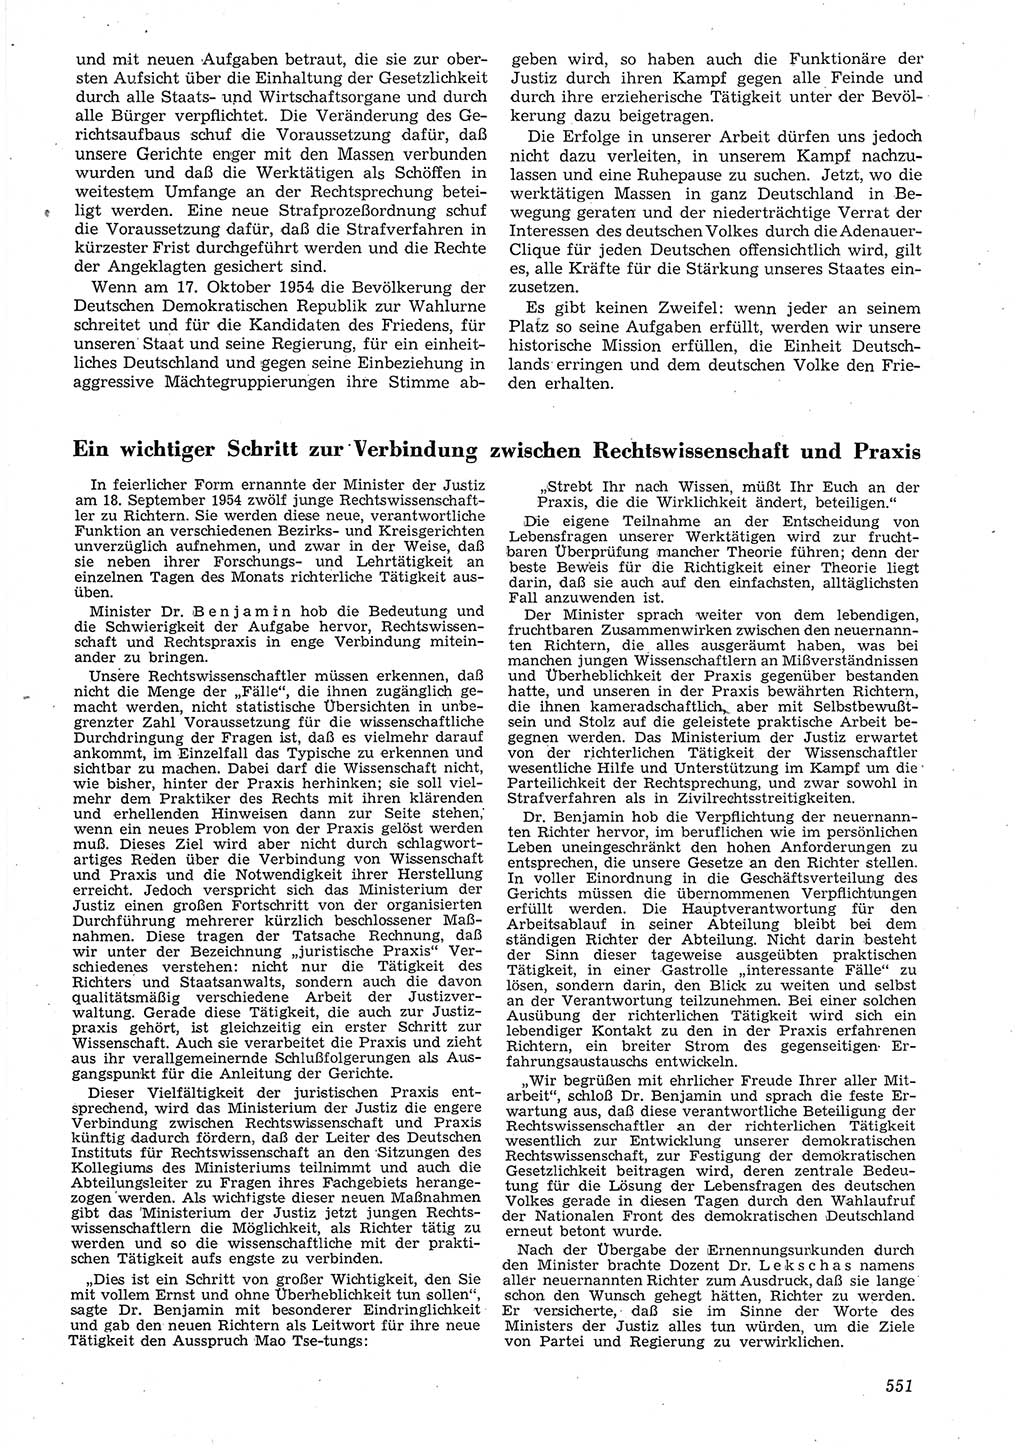 Neue Justiz (NJ), Zeitschrift für Recht und Rechtswissenschaft [Deutsche Demokratische Republik (DDR)], 8. Jahrgang 1954, Seite 551 (NJ DDR 1954, S. 551)